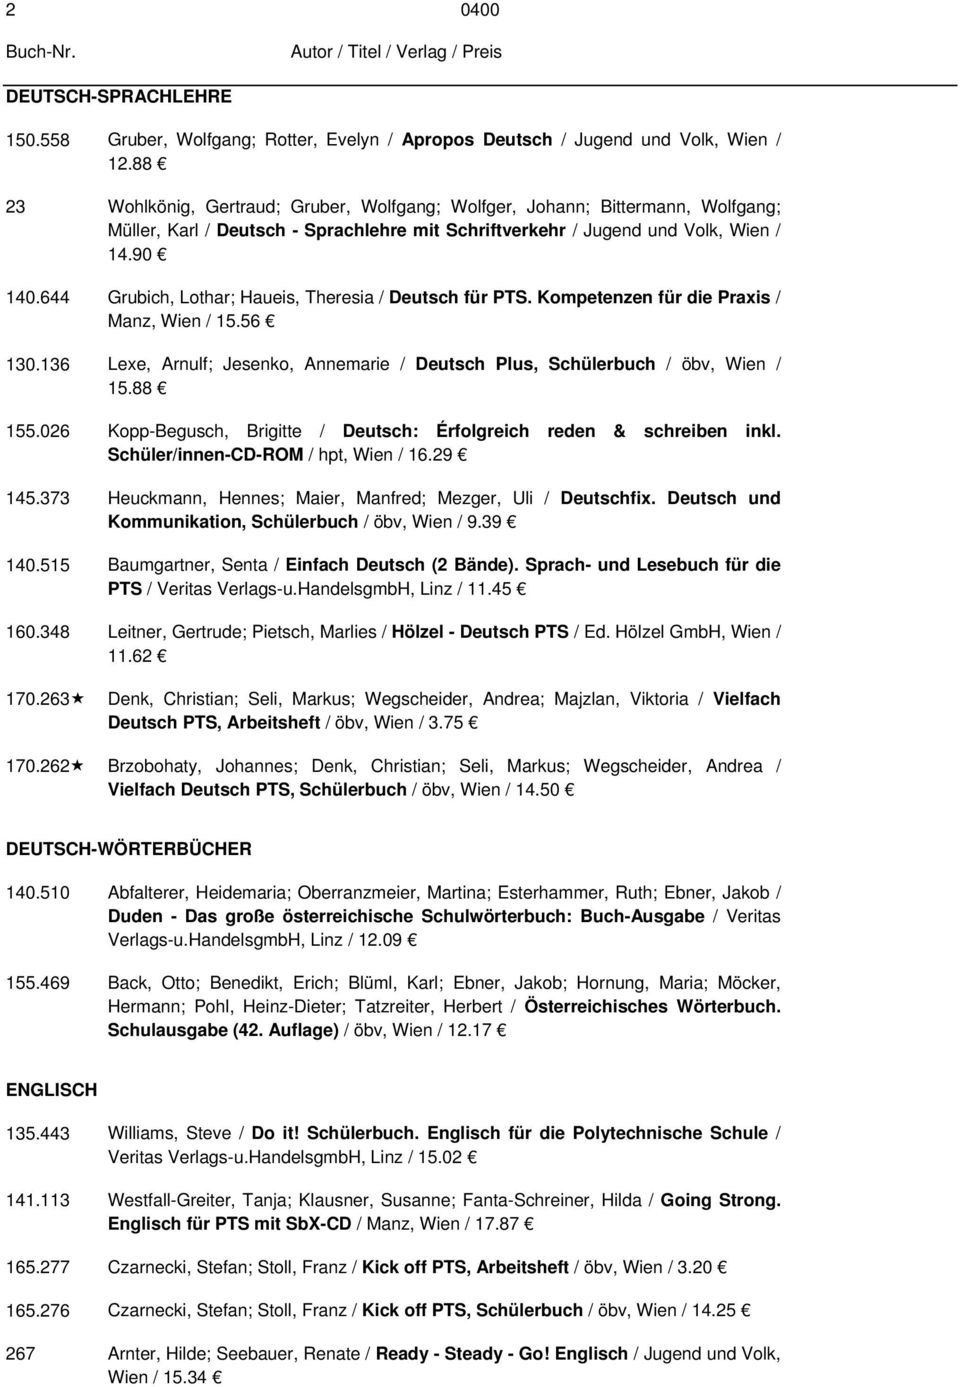 644 Grubich, Lothar; Haueis, Theresia / Deutsch für PTS. Kompetenzen für die Praxis / Manz, Wien / 15.56 130.136 Lexe, Arnulf; Jesenko, Annemarie / Deutsch Plus, Schülerbuch / öbv, Wien / 15.88 155.